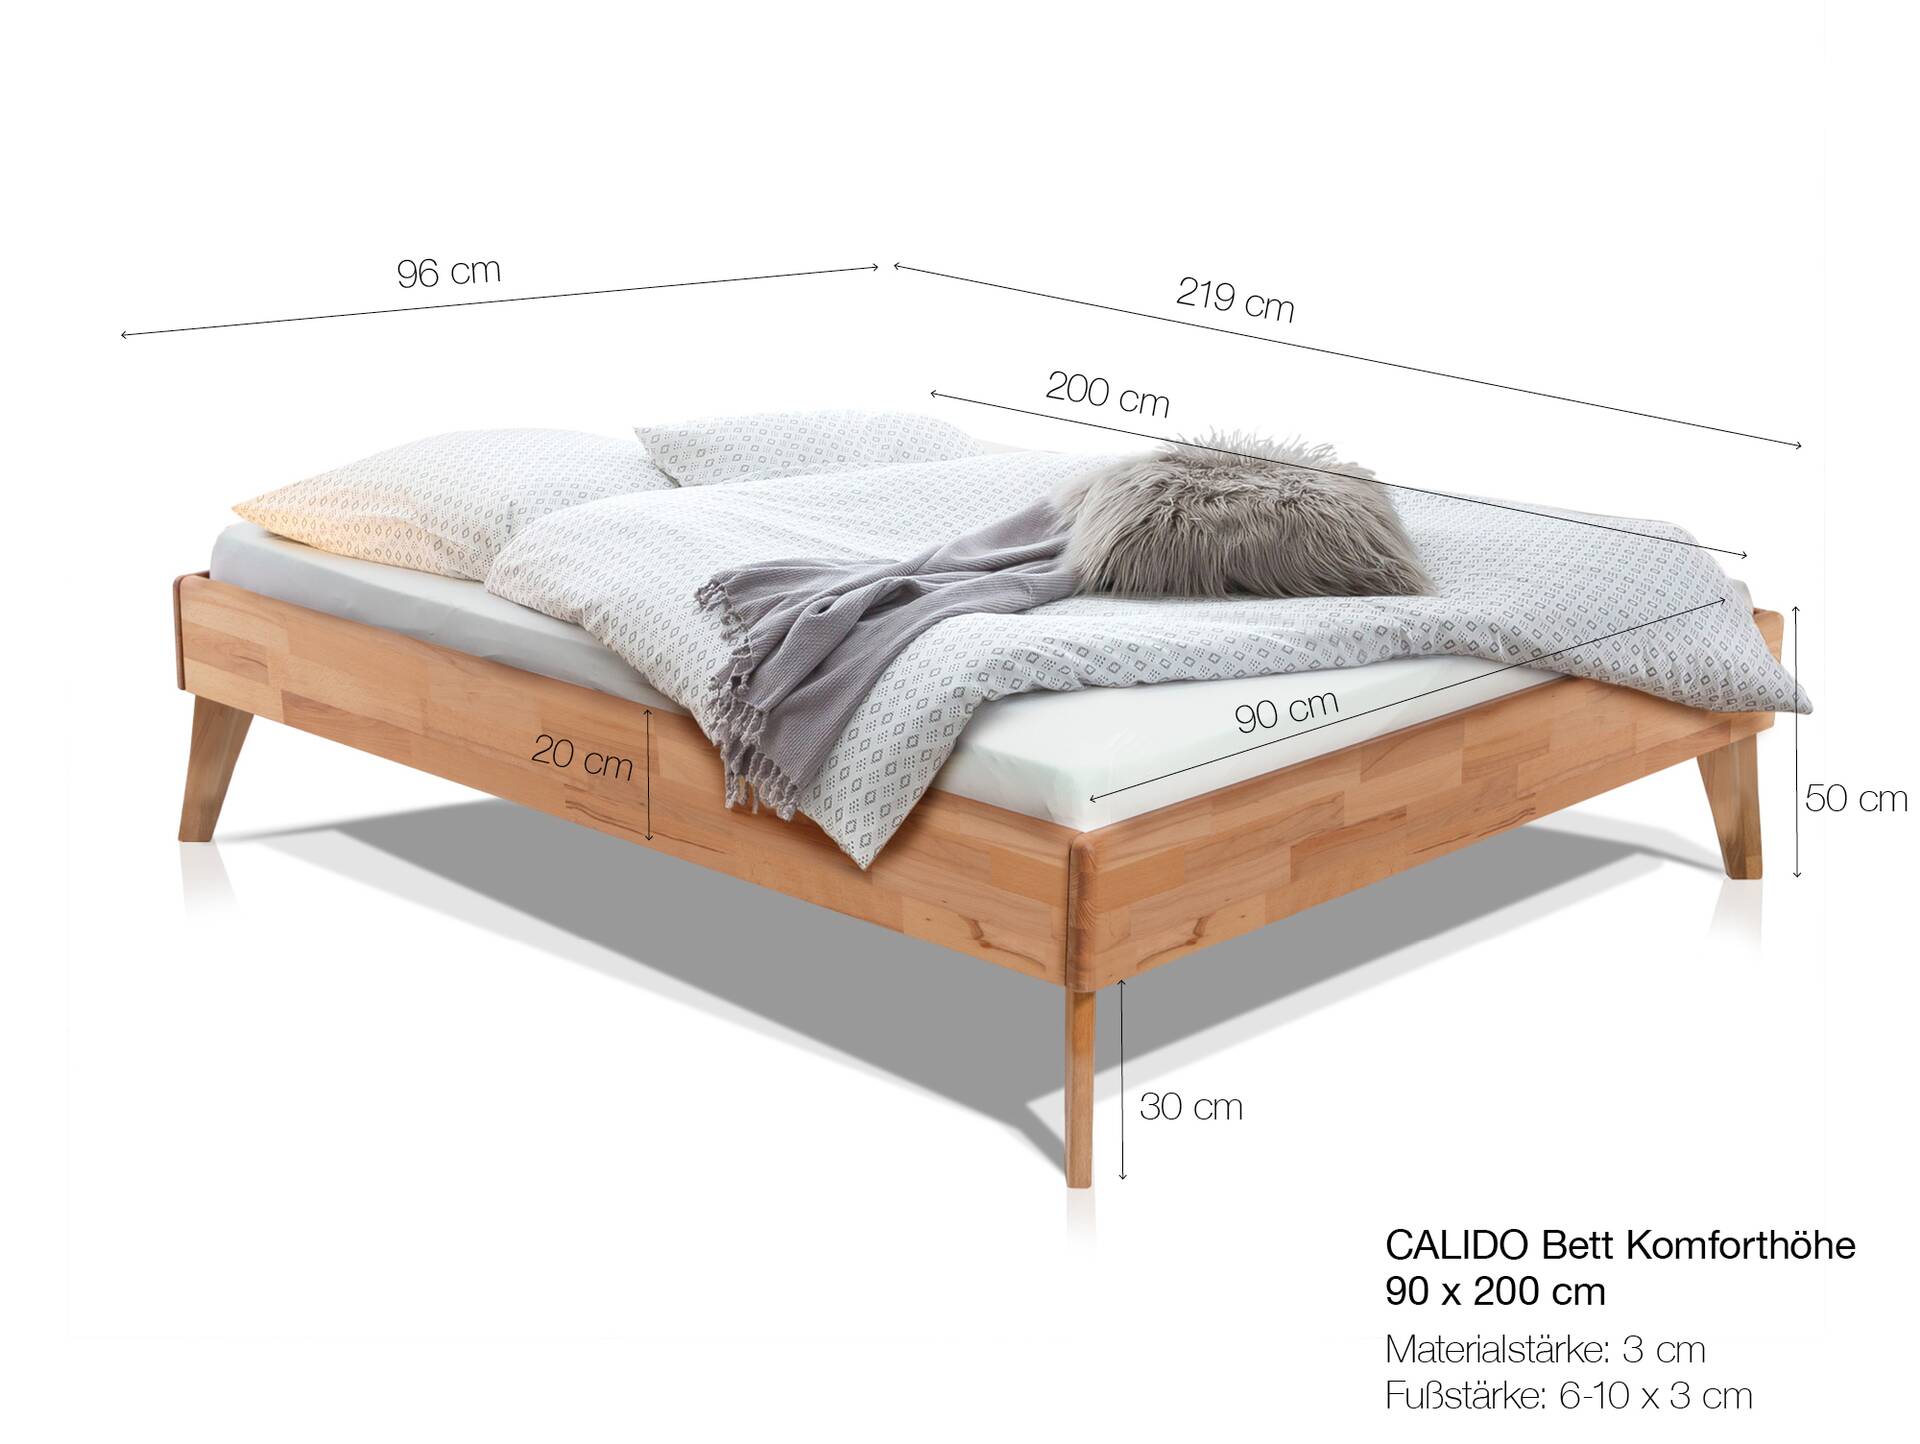 CALIDO 4-Fuß-Bett ohne Kopfteil, Material Massivholz 90 x 200 cm | Buche nussbaumfarbig gedämpft | Komforthöhe